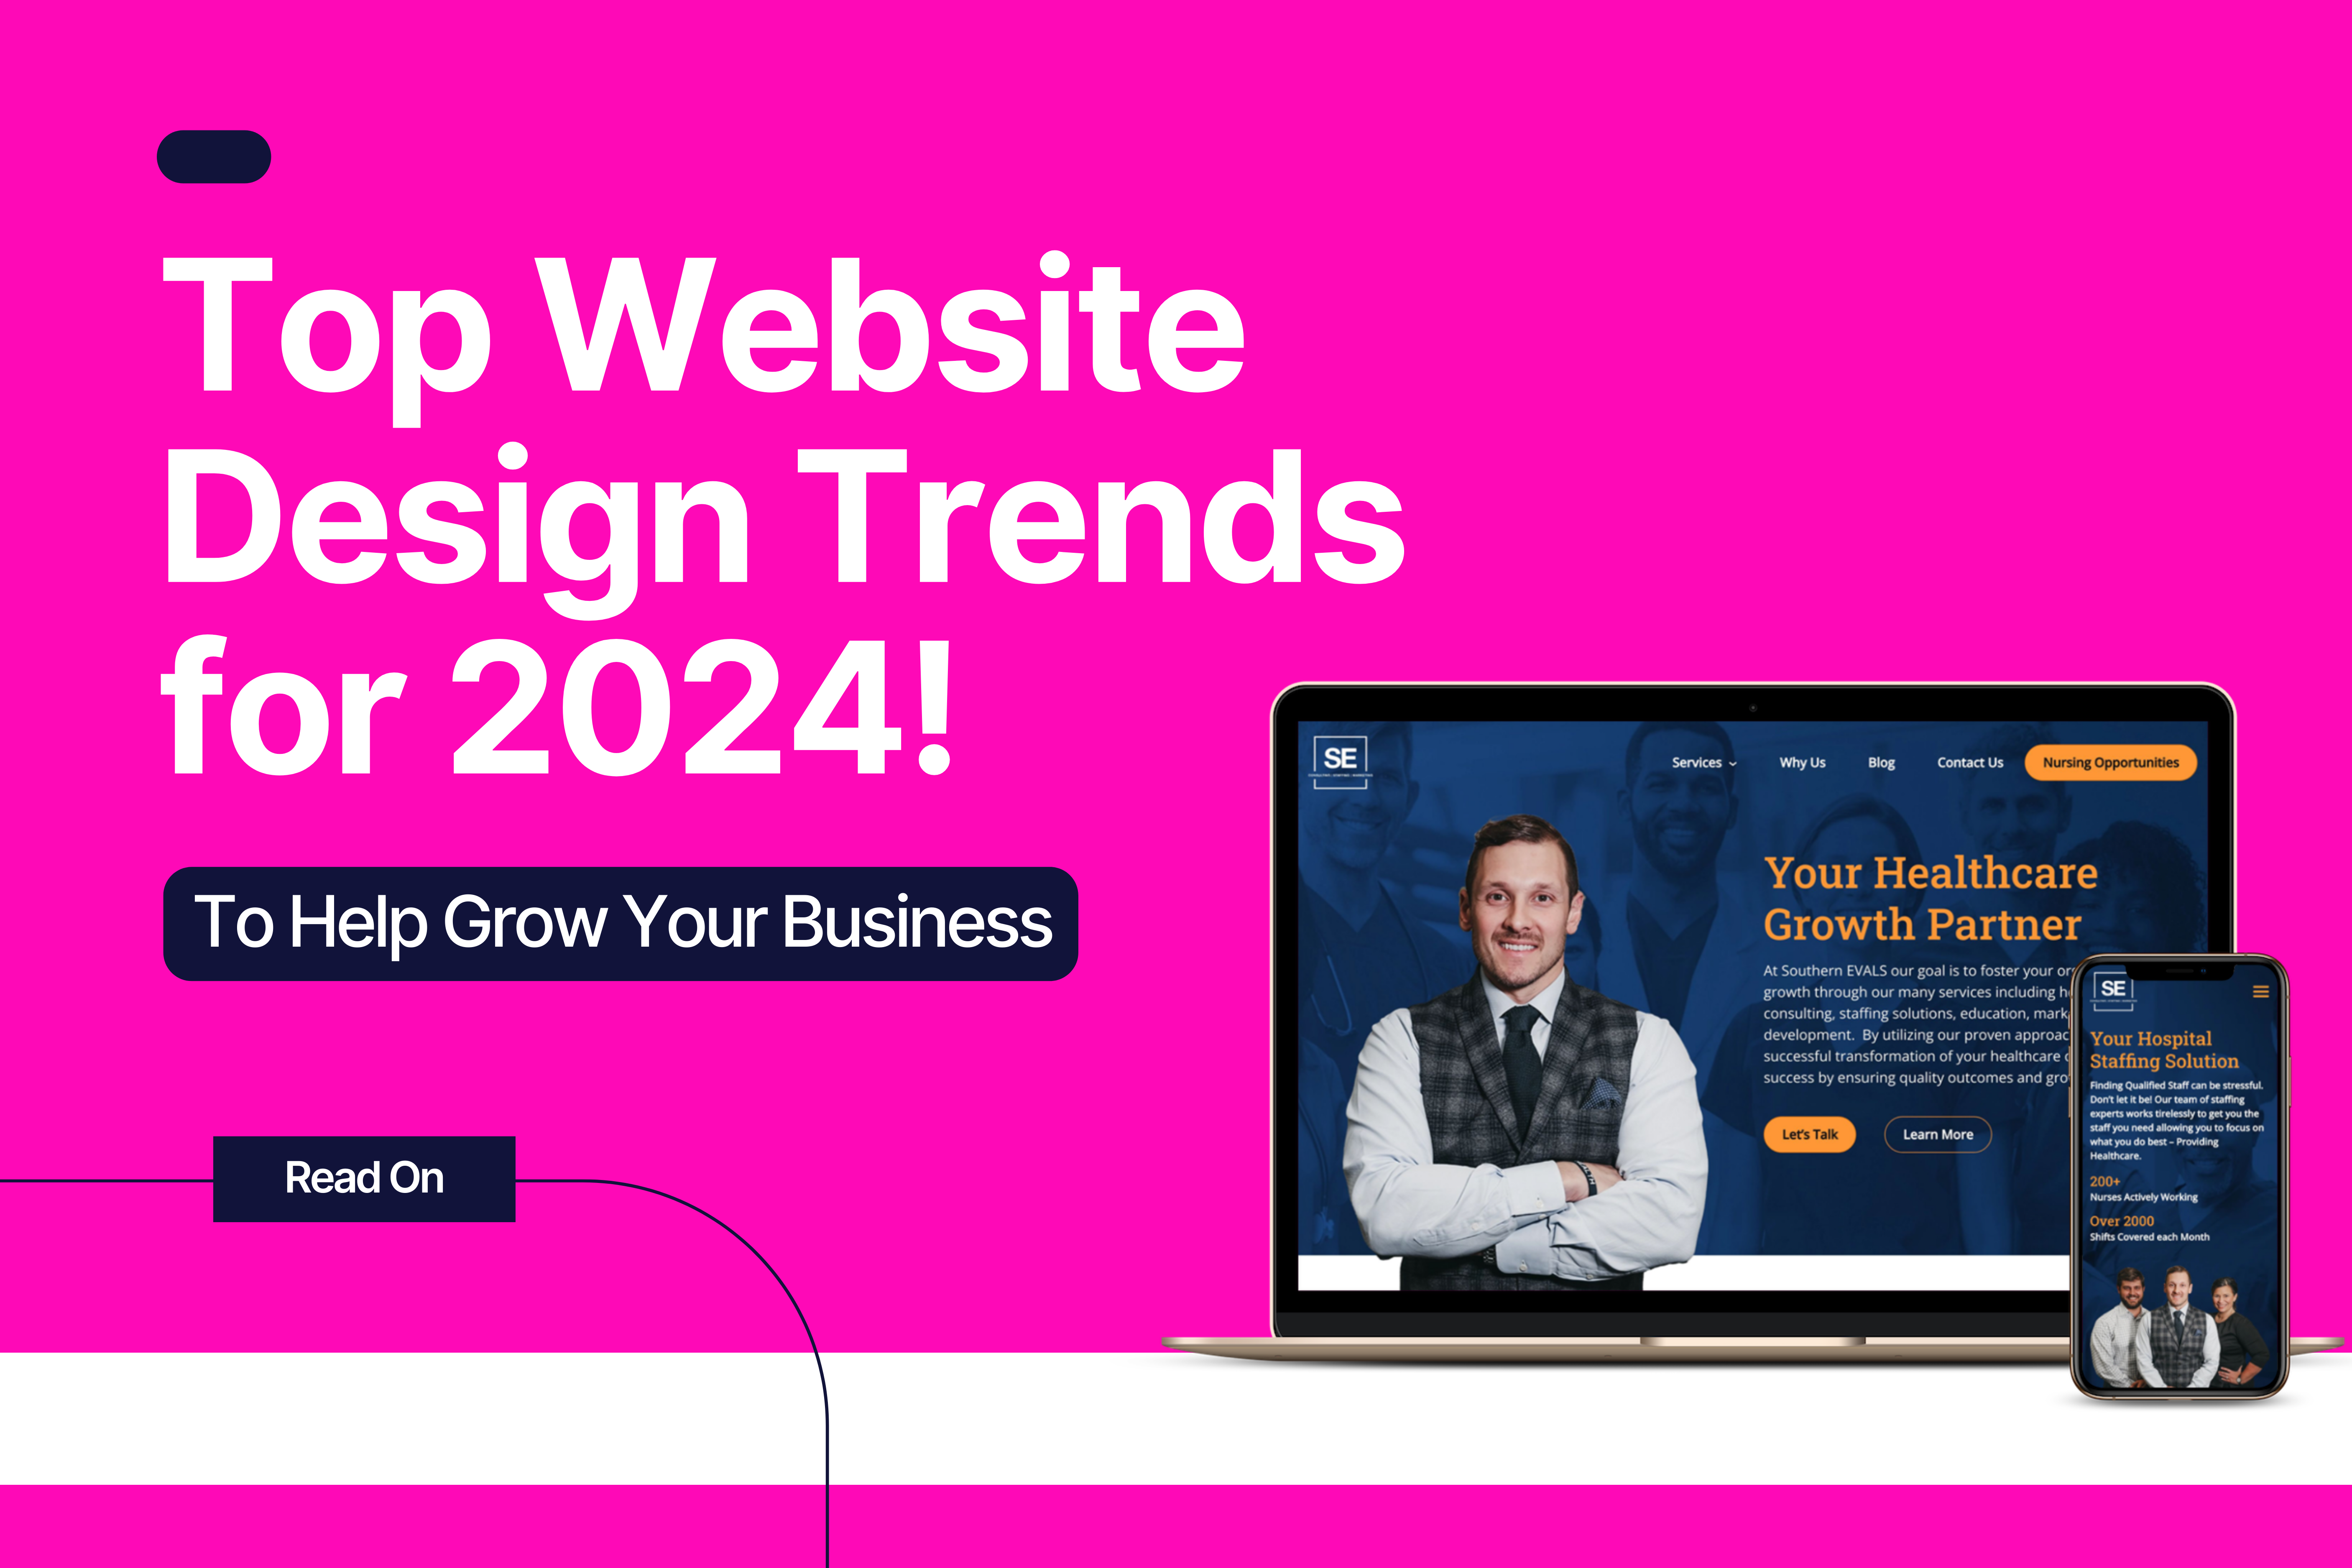 Top Website Design Trends for 2024